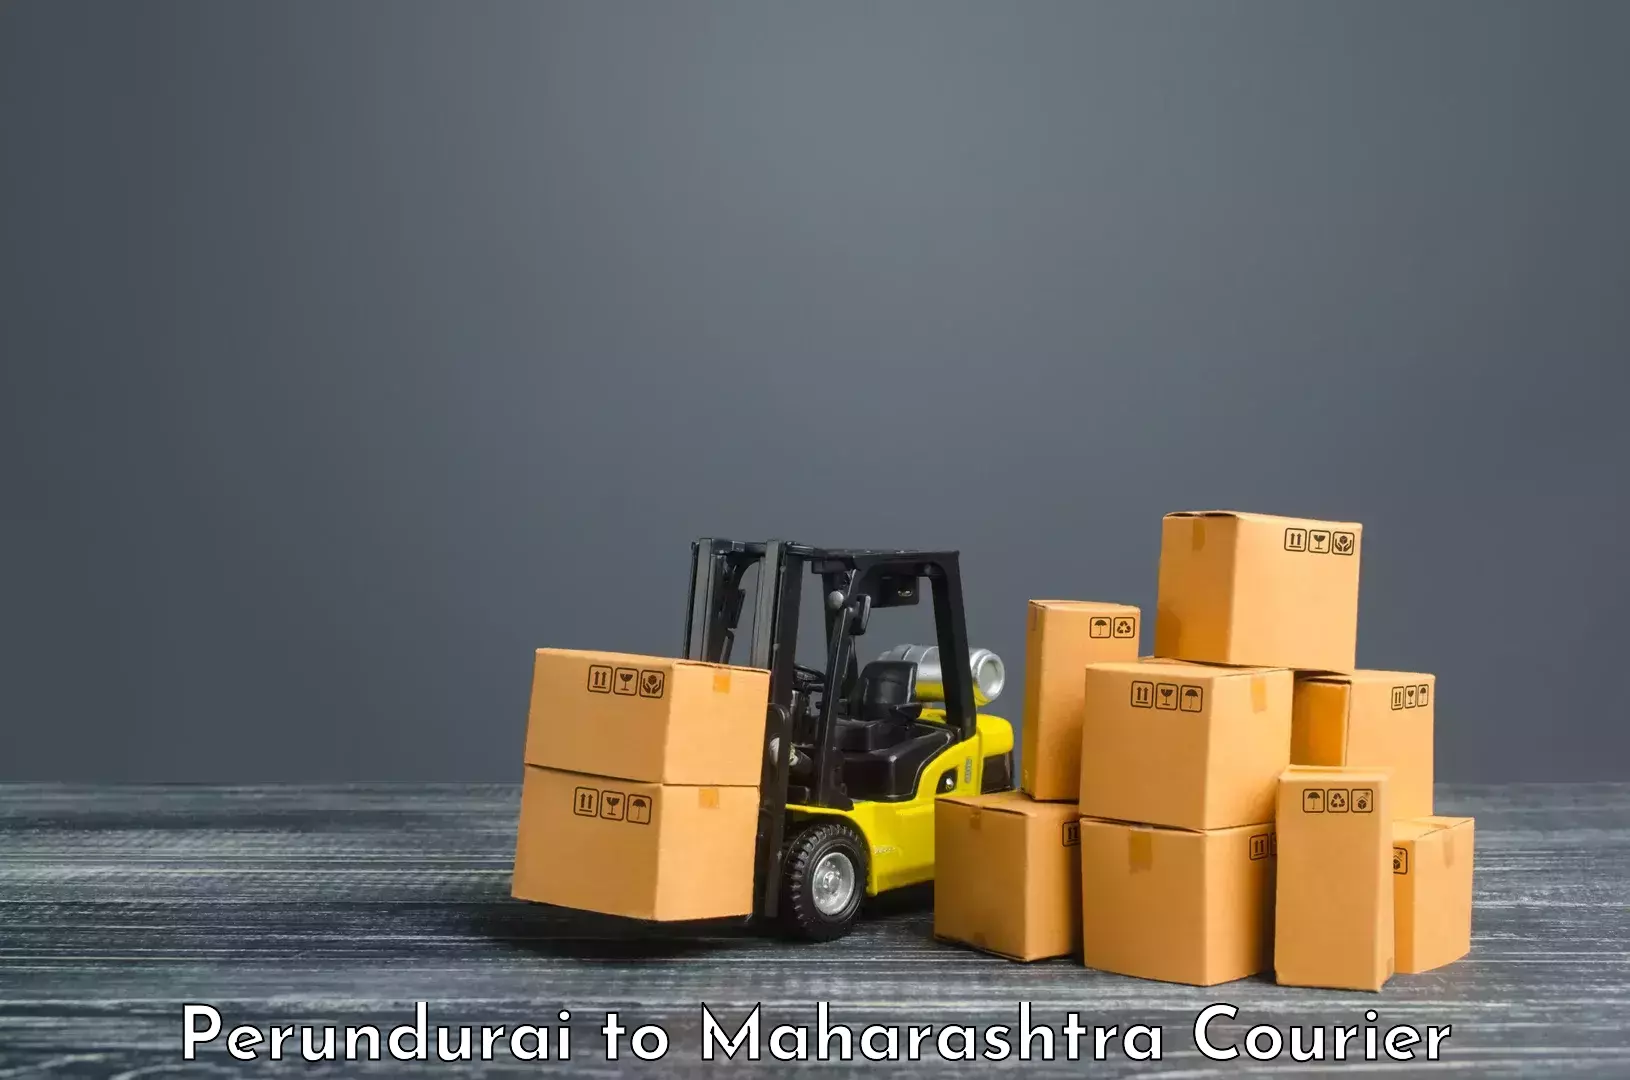 Professional courier services in Perundurai to Mumbai Port